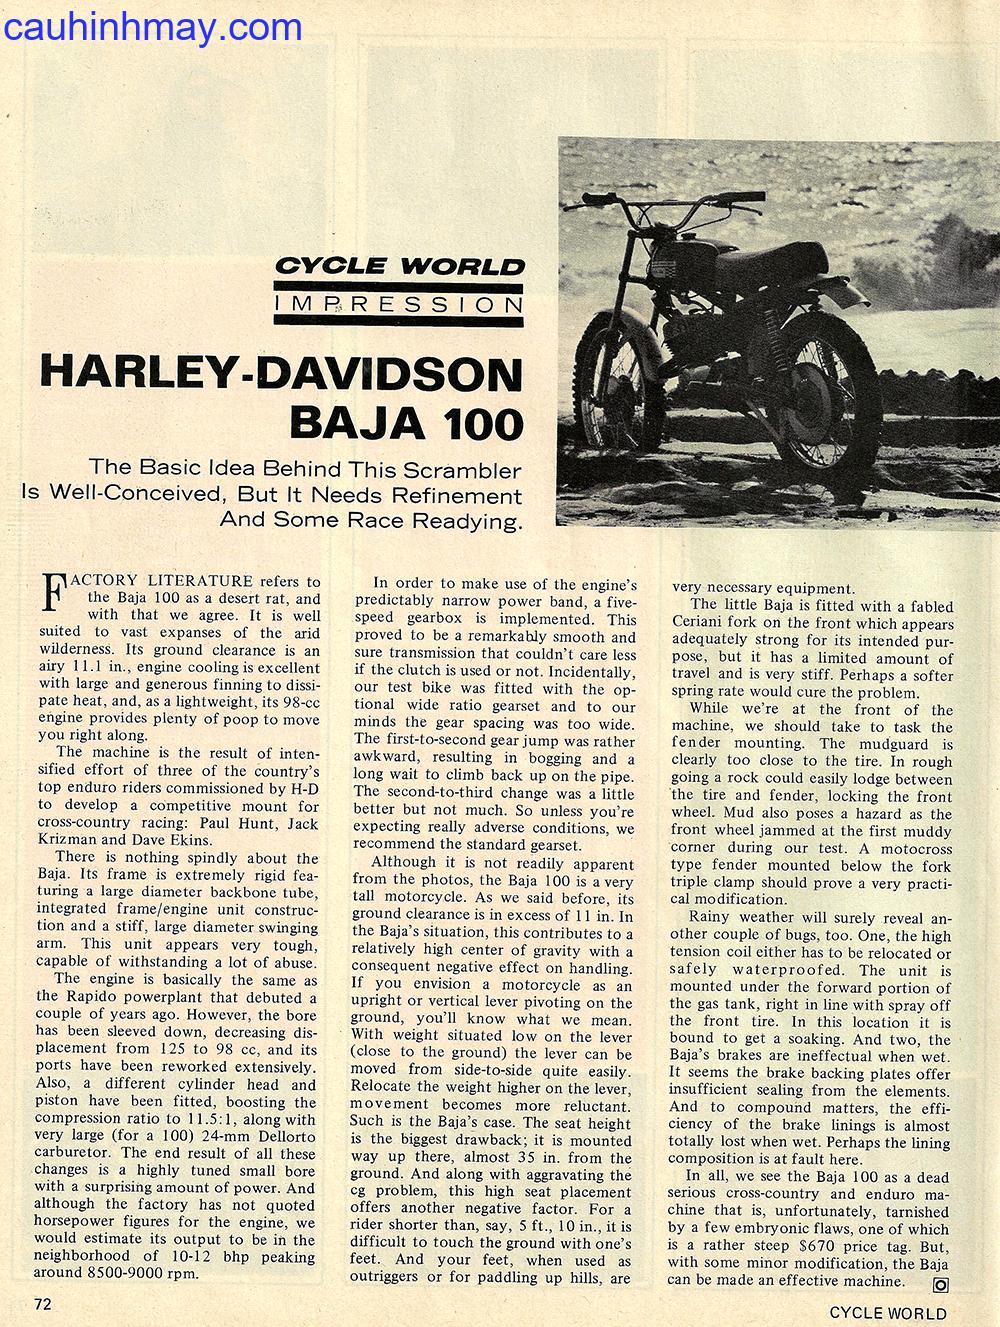 1970 HARLEY DAVIDSON BAJA 100 - cauhinhmay.com